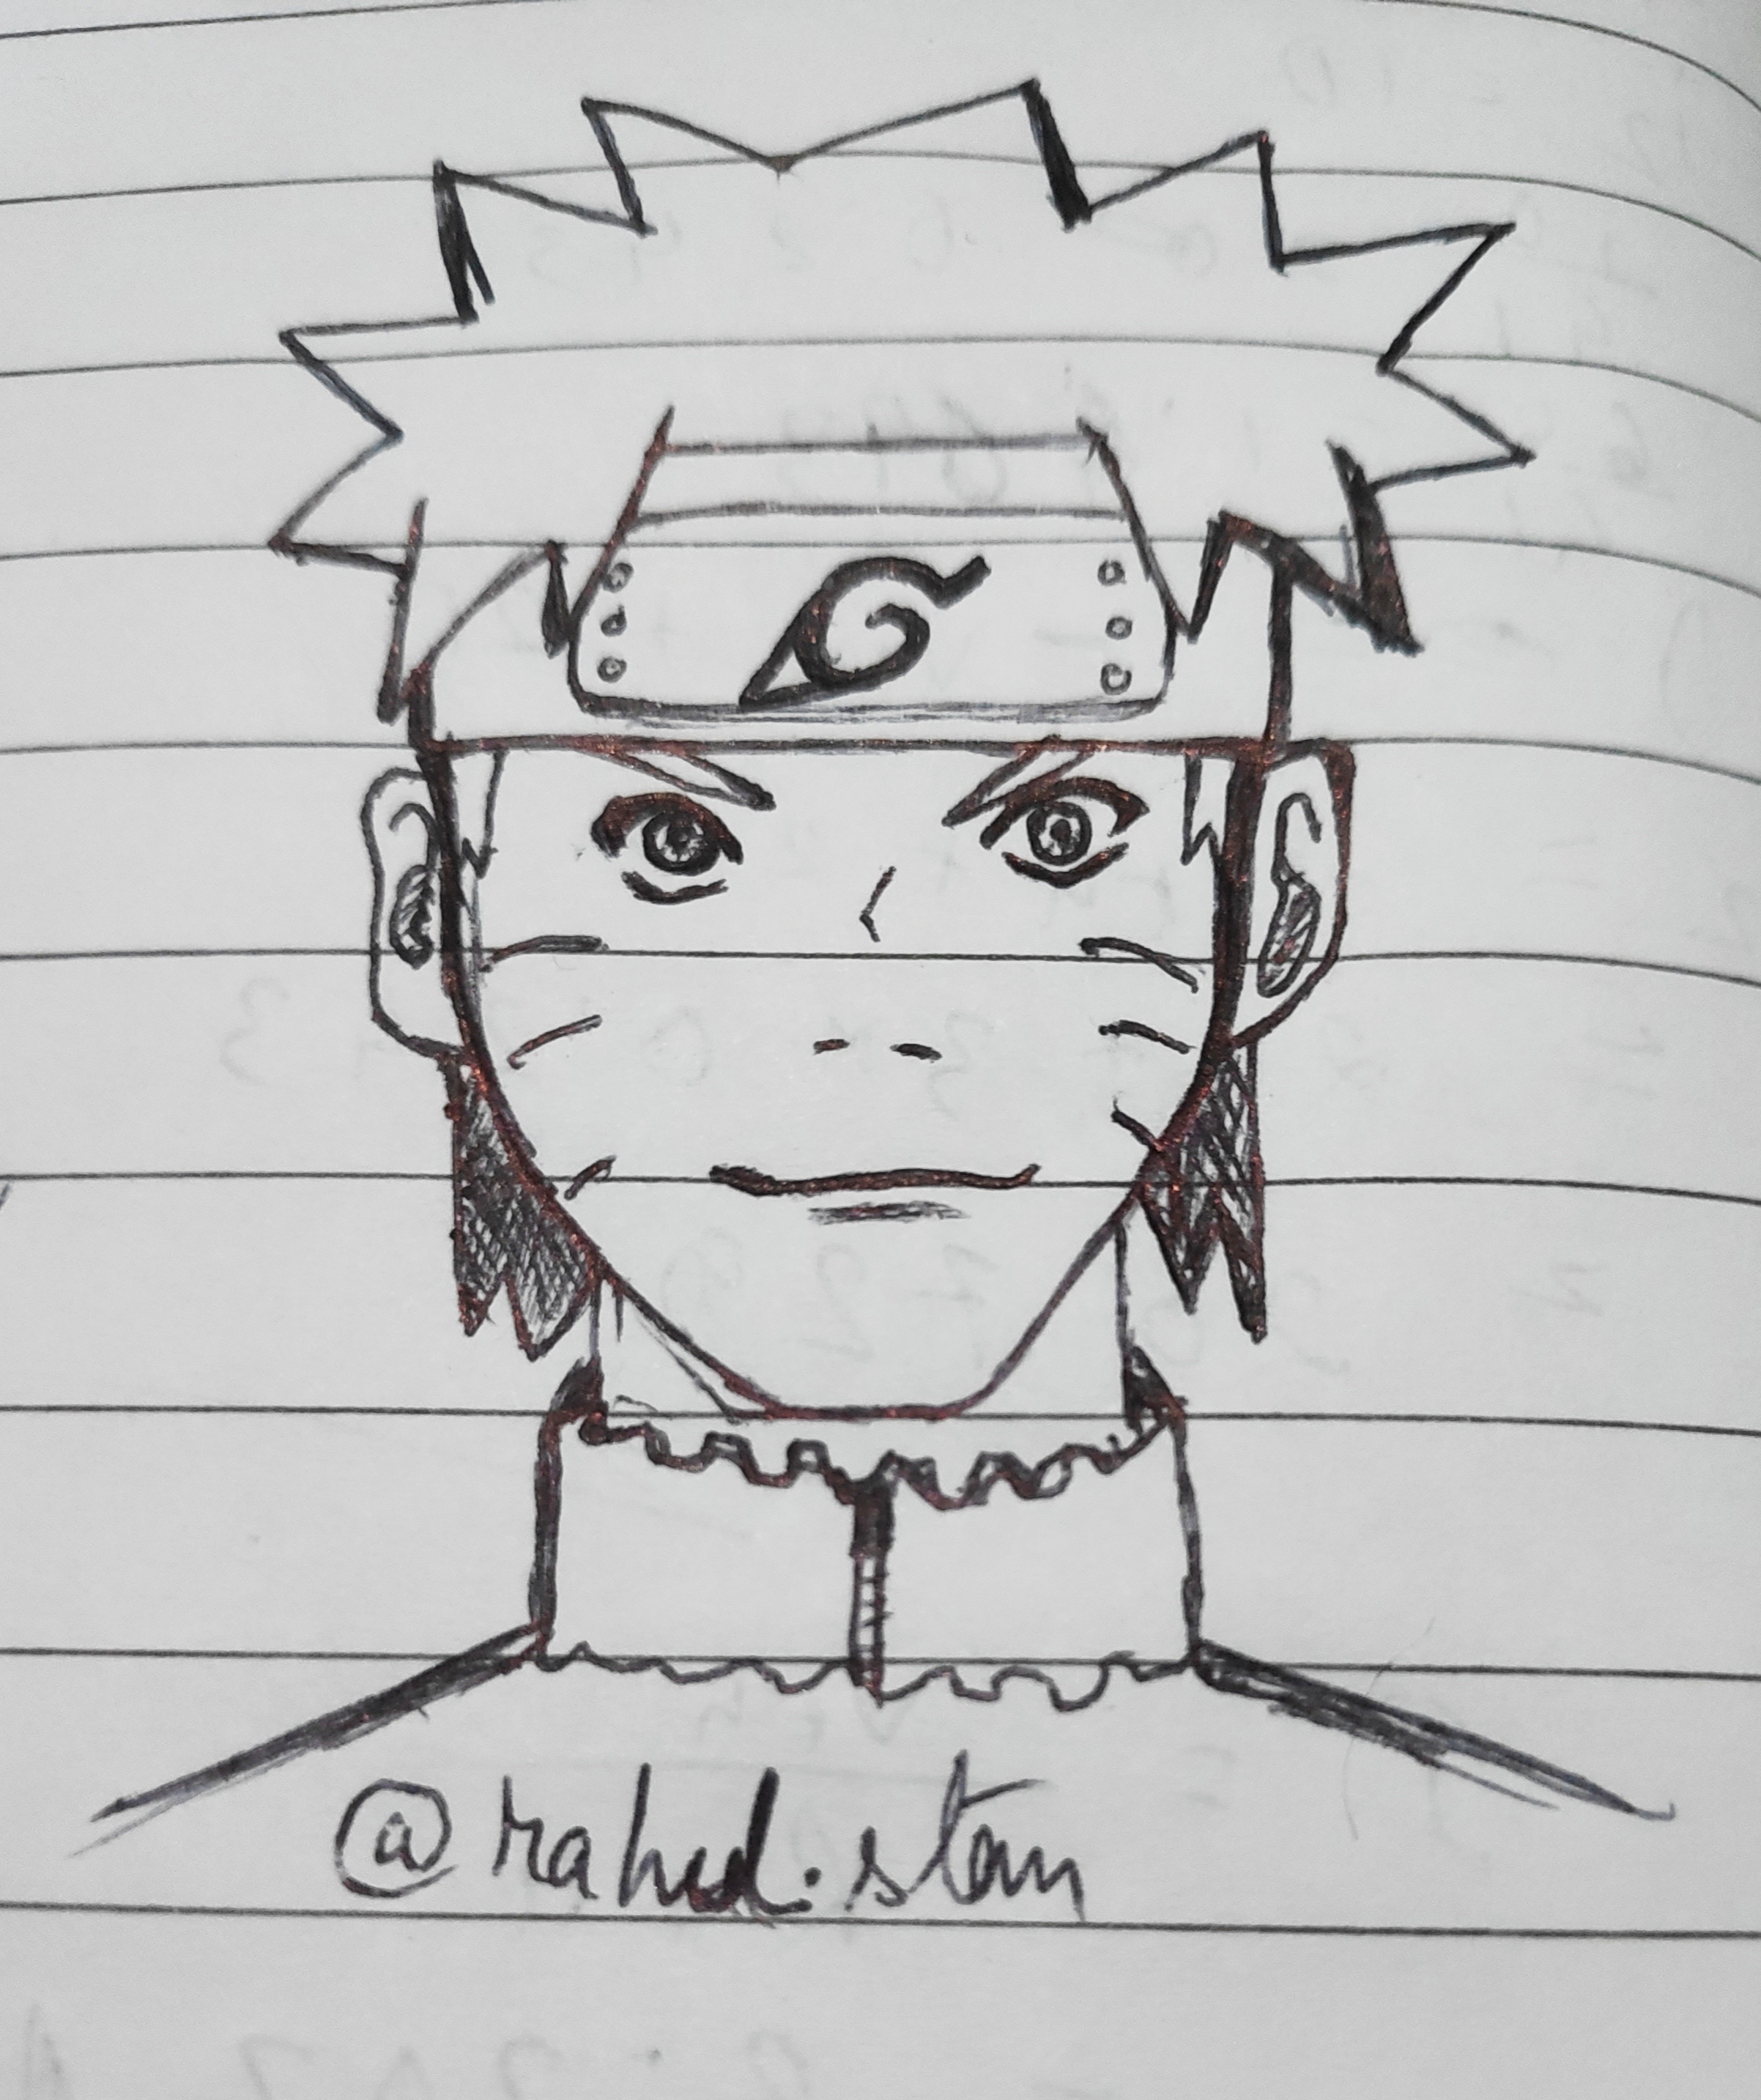 Naruto Uzumaki  Naruto drawings, Naruto sketch, Naruto sketch drawing